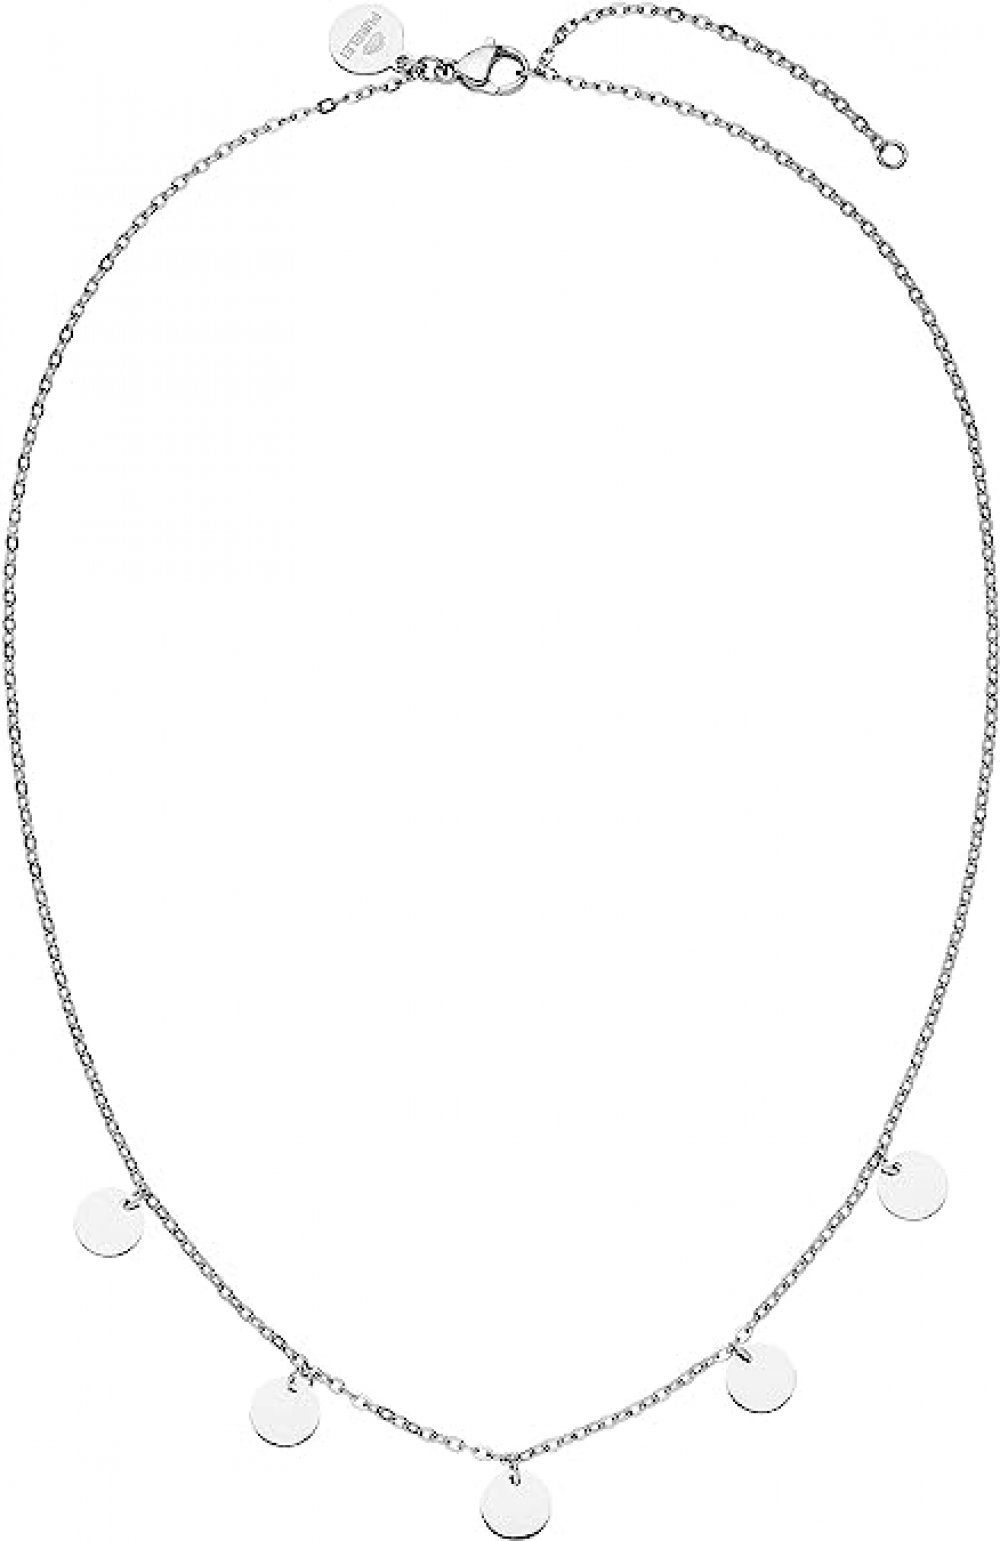 WaKuKa Charm-Kette Damen-Halskette, wasserfeste Kette aus 925er Silber silbrig